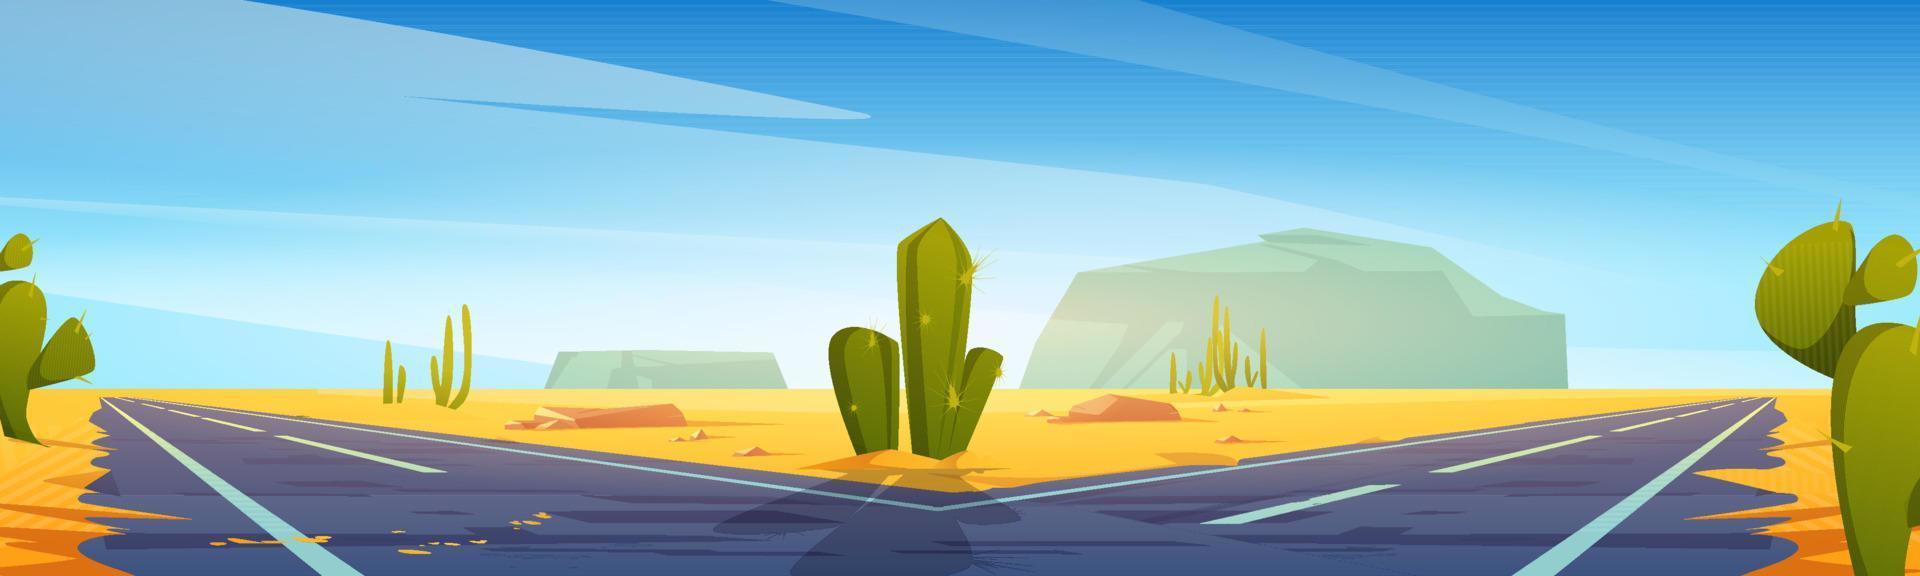 strada forchetta nel deserto con sabbia e cactus, autostrada vettore